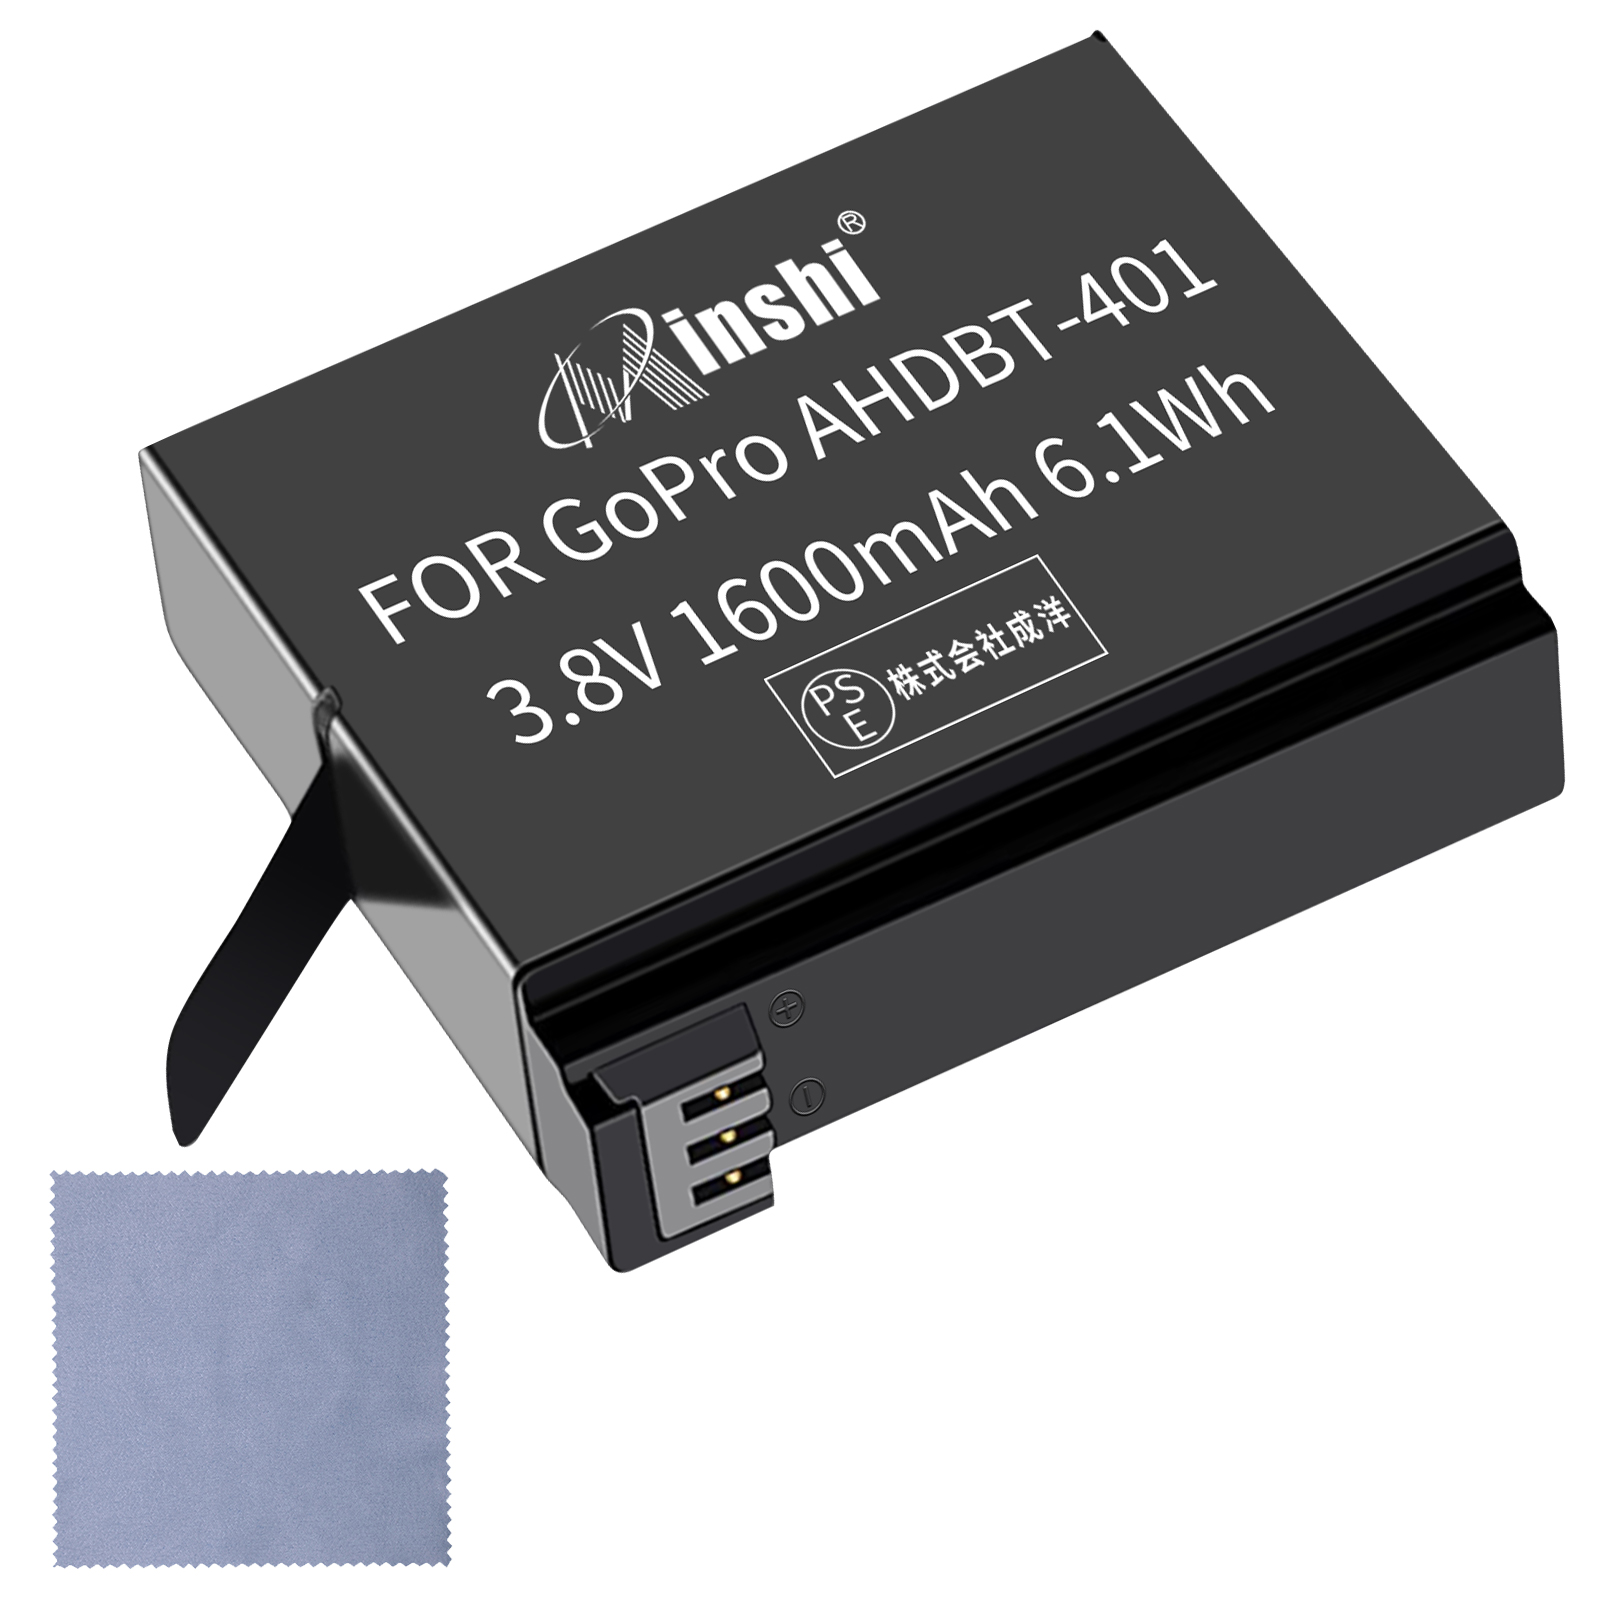 【清潔布ー付】minshi AHDBT-401【1600mAh 3.8V】 高品質AHDBT-401交換用バッテリー